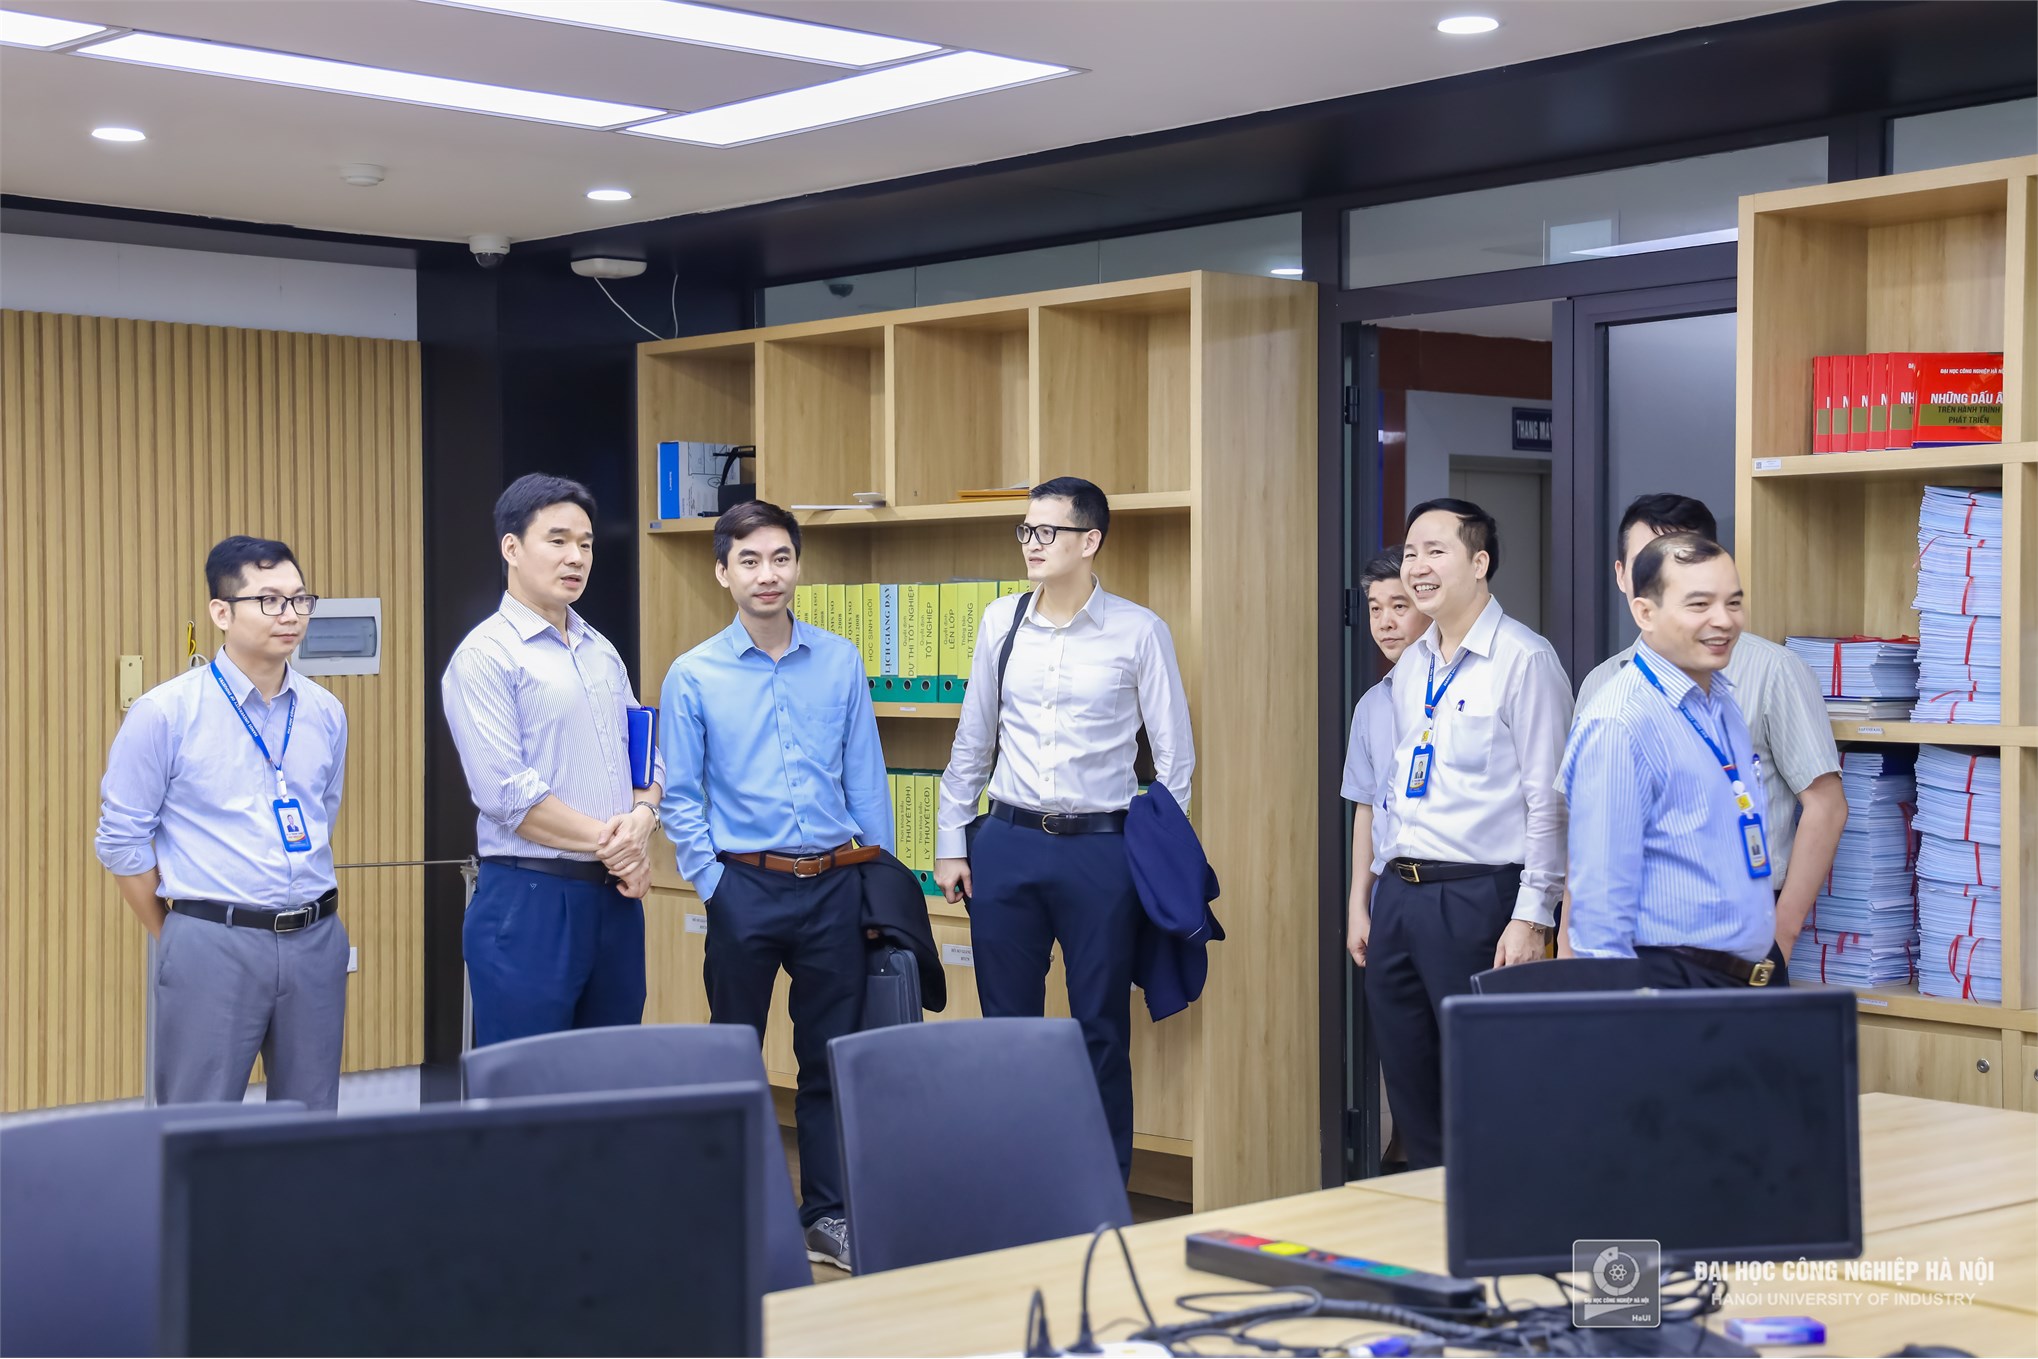 Đại học Công nghiệp Hà Nội hợp tác cùng GeneStory xây dựng hệ thống quản lý và xử lý dữ liệu trong y sinh học